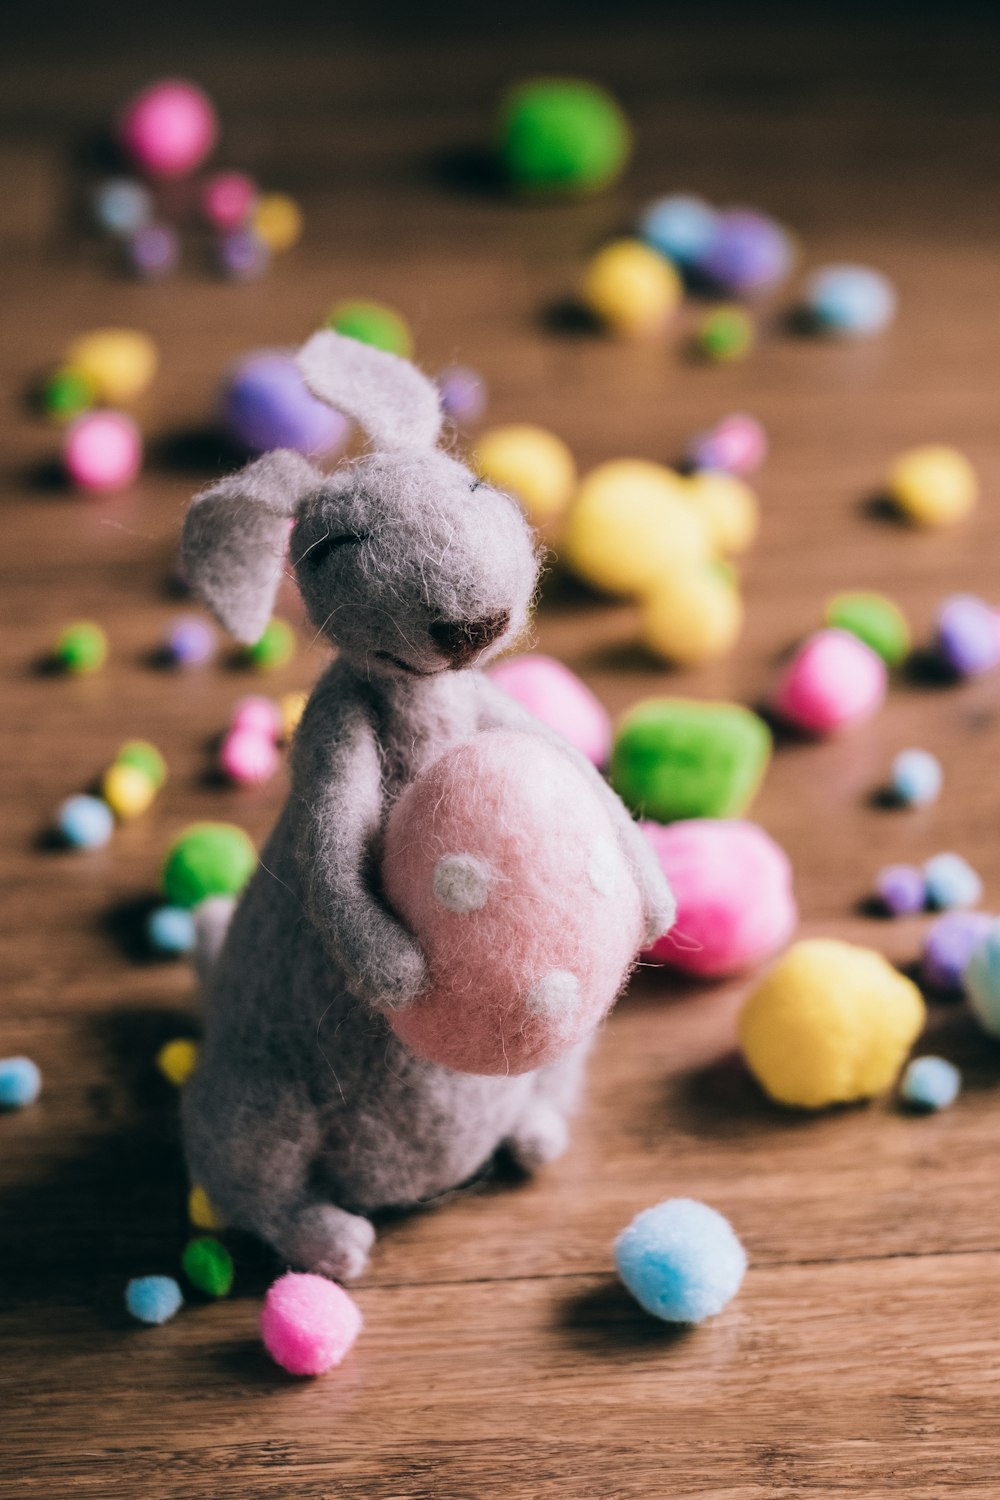 회색 토끼 봉제 장난감의 근접 촬영 사진